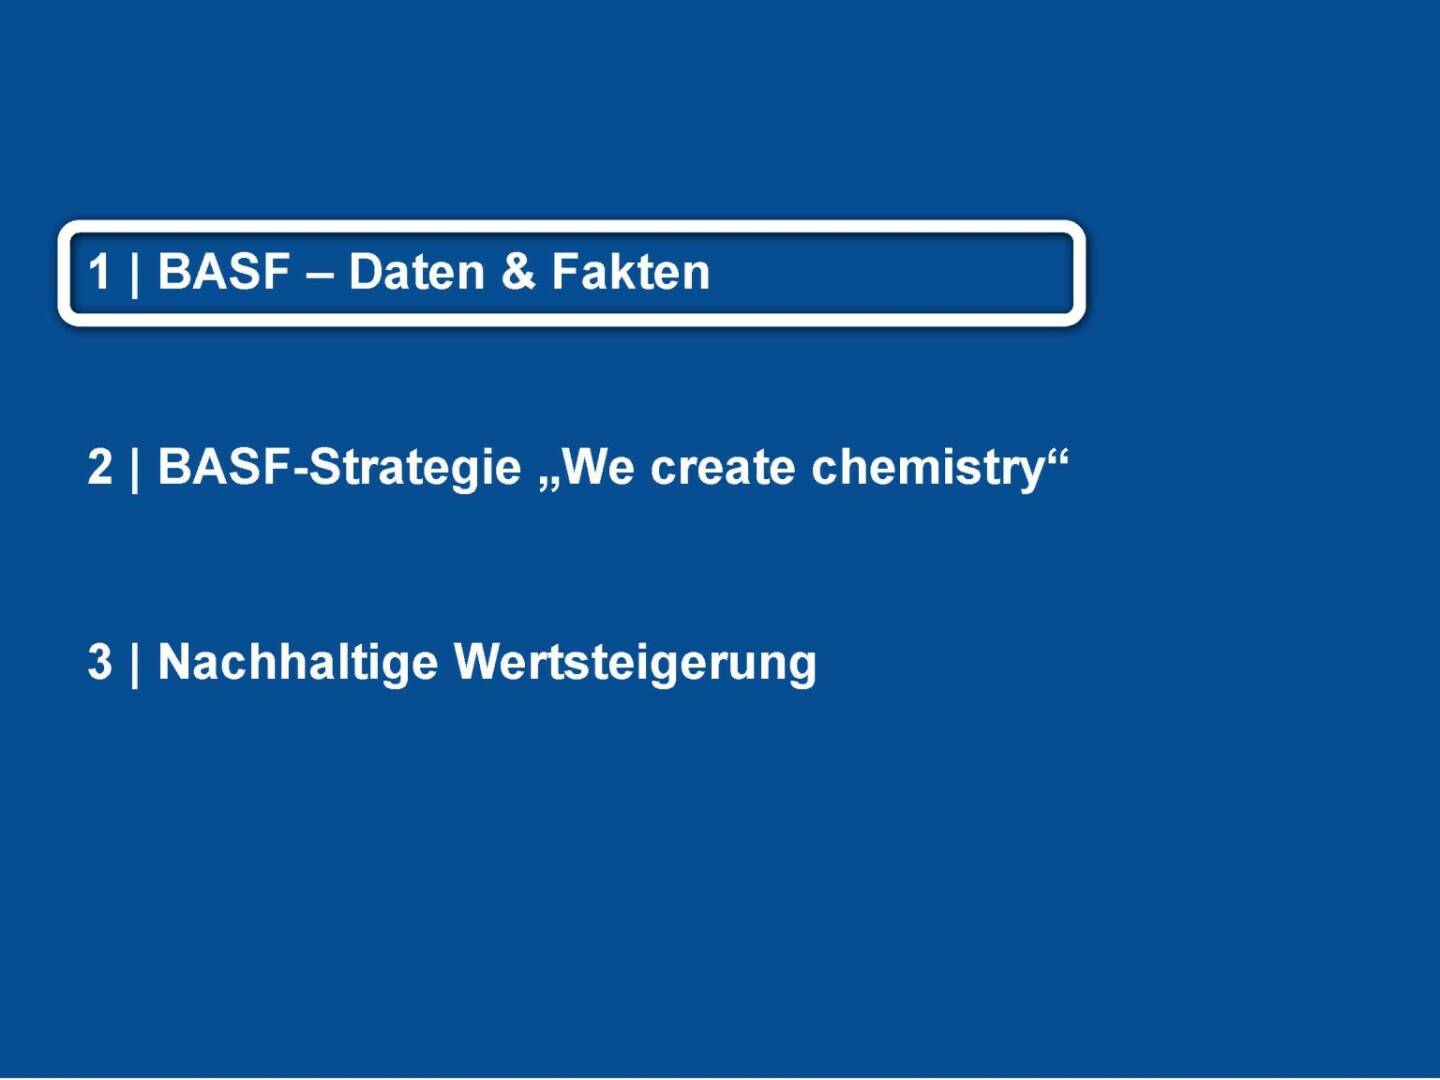 BASF - Daten & Fakten